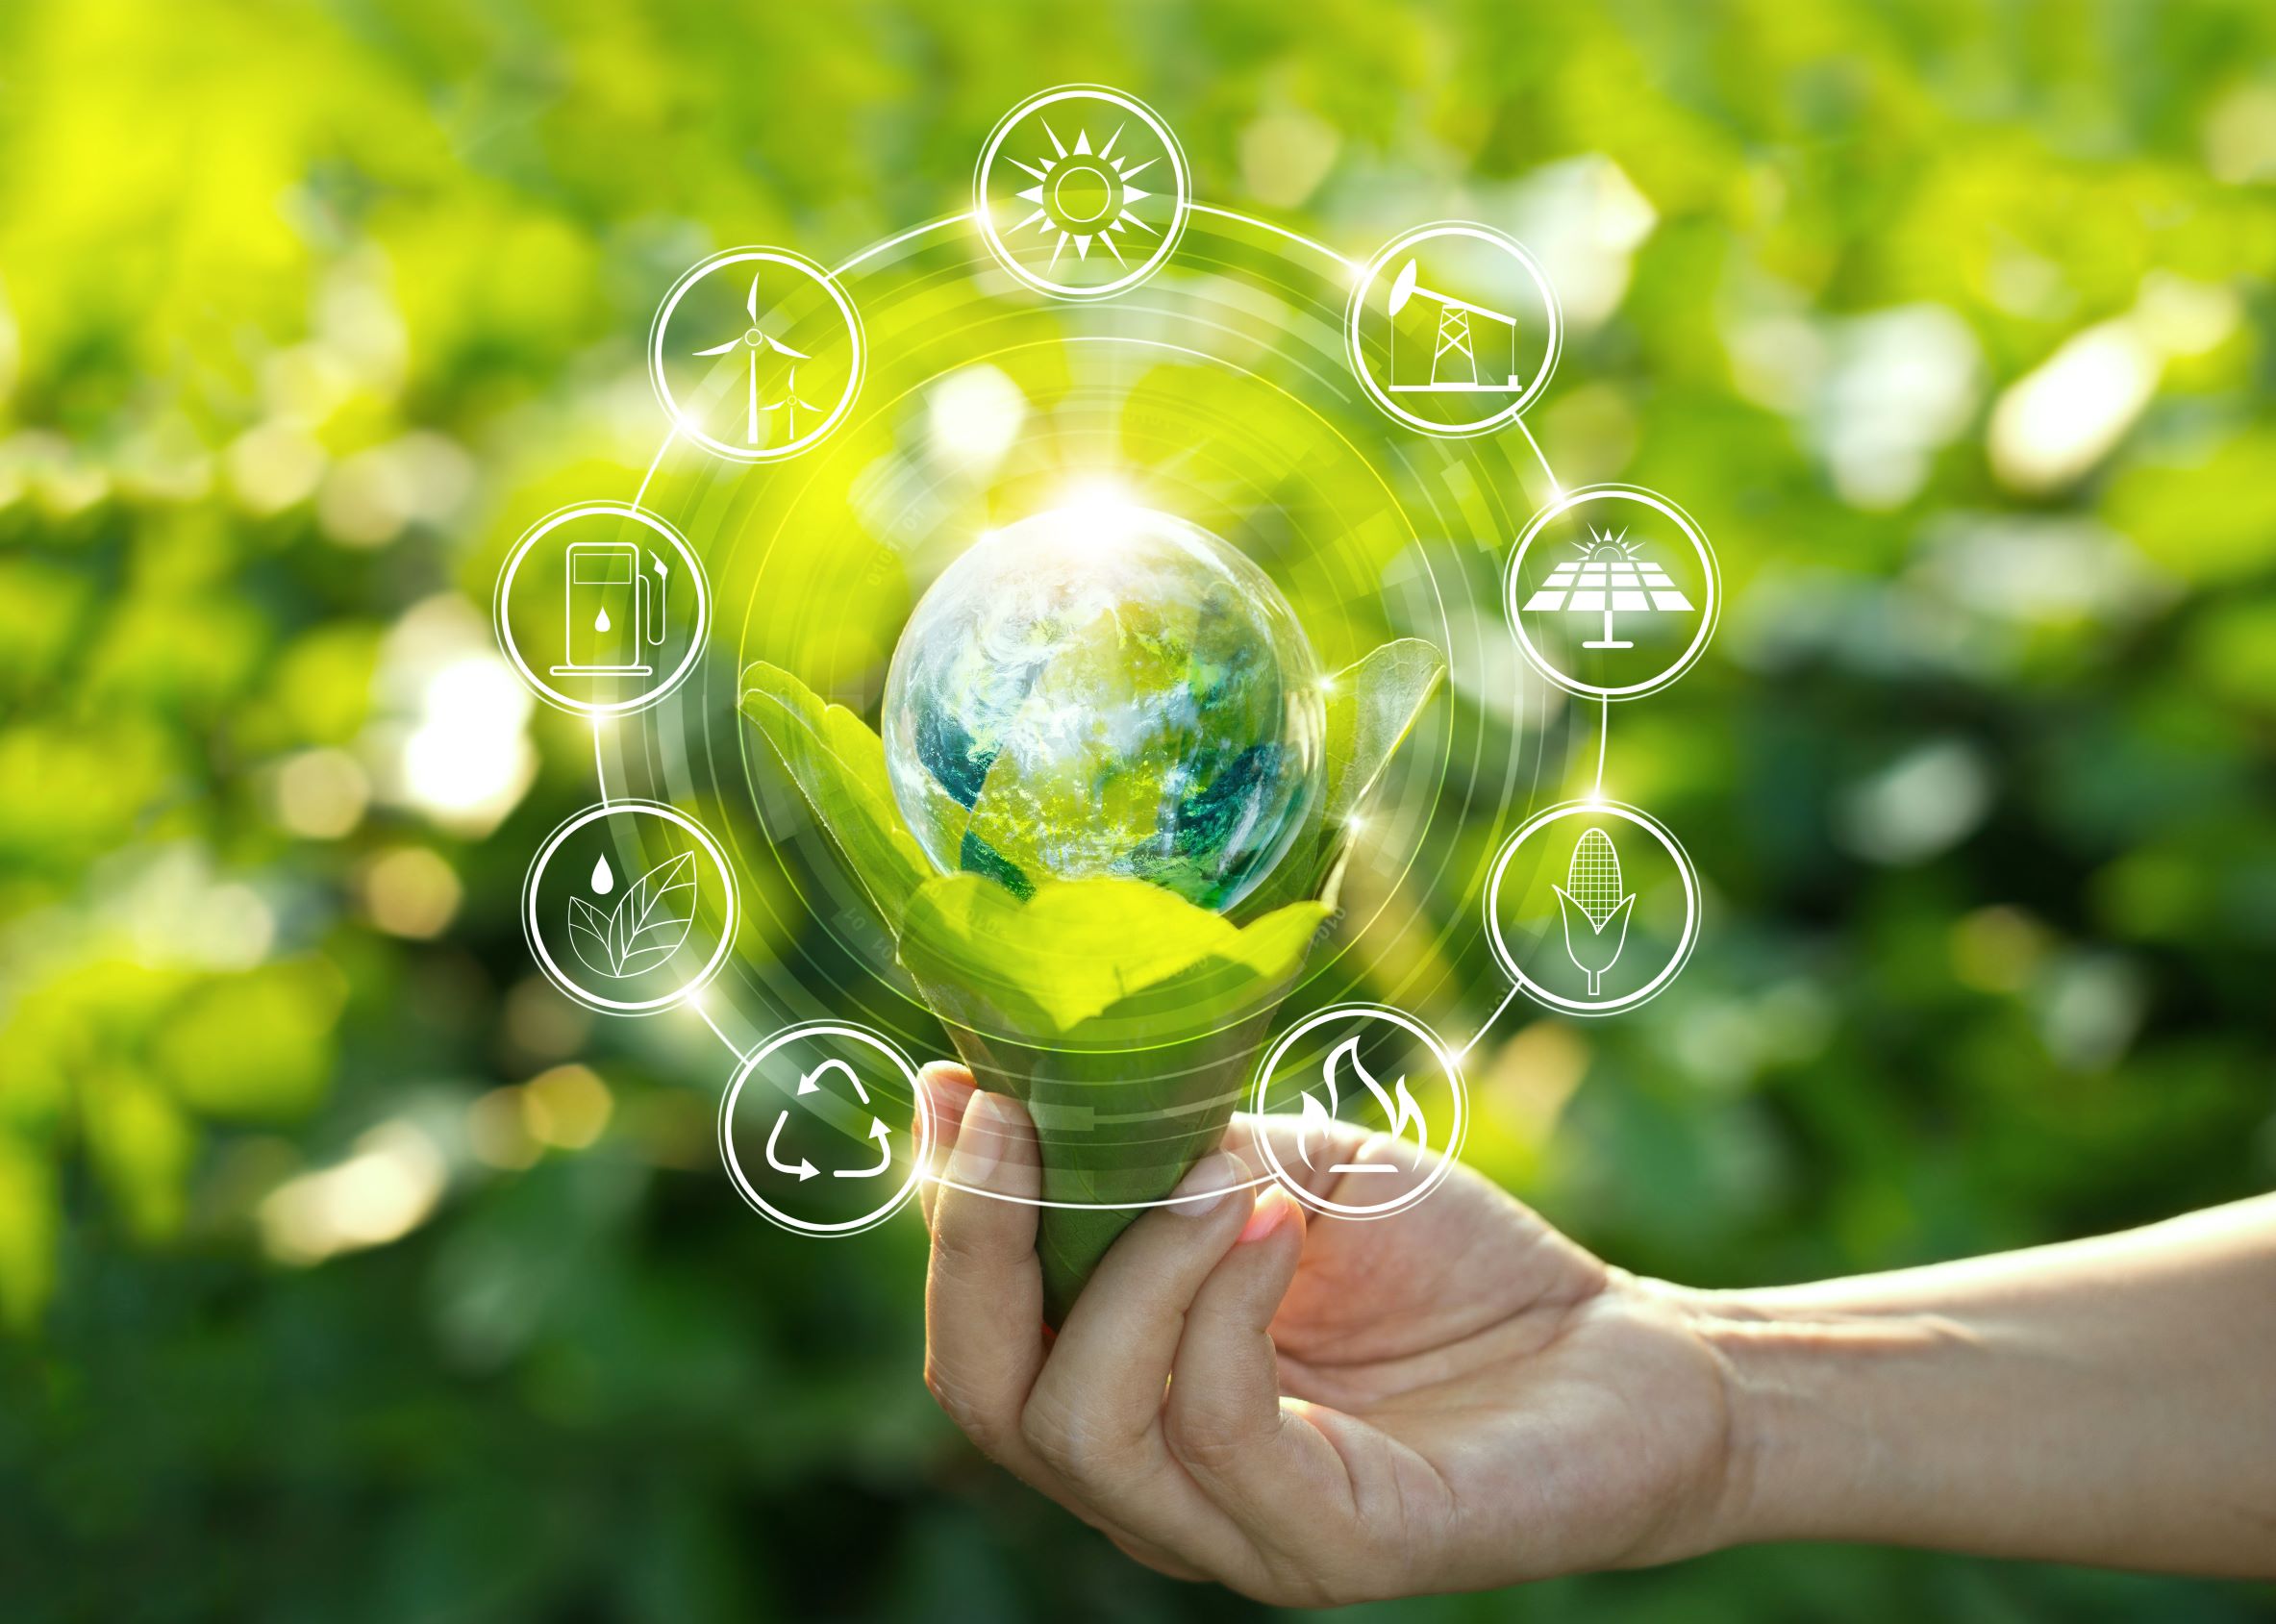 İSTİB Başkanı Kopuz: “Yeşil Mutabakat’a uyum için üretimde yeşil dönüşüm gerekiyor”